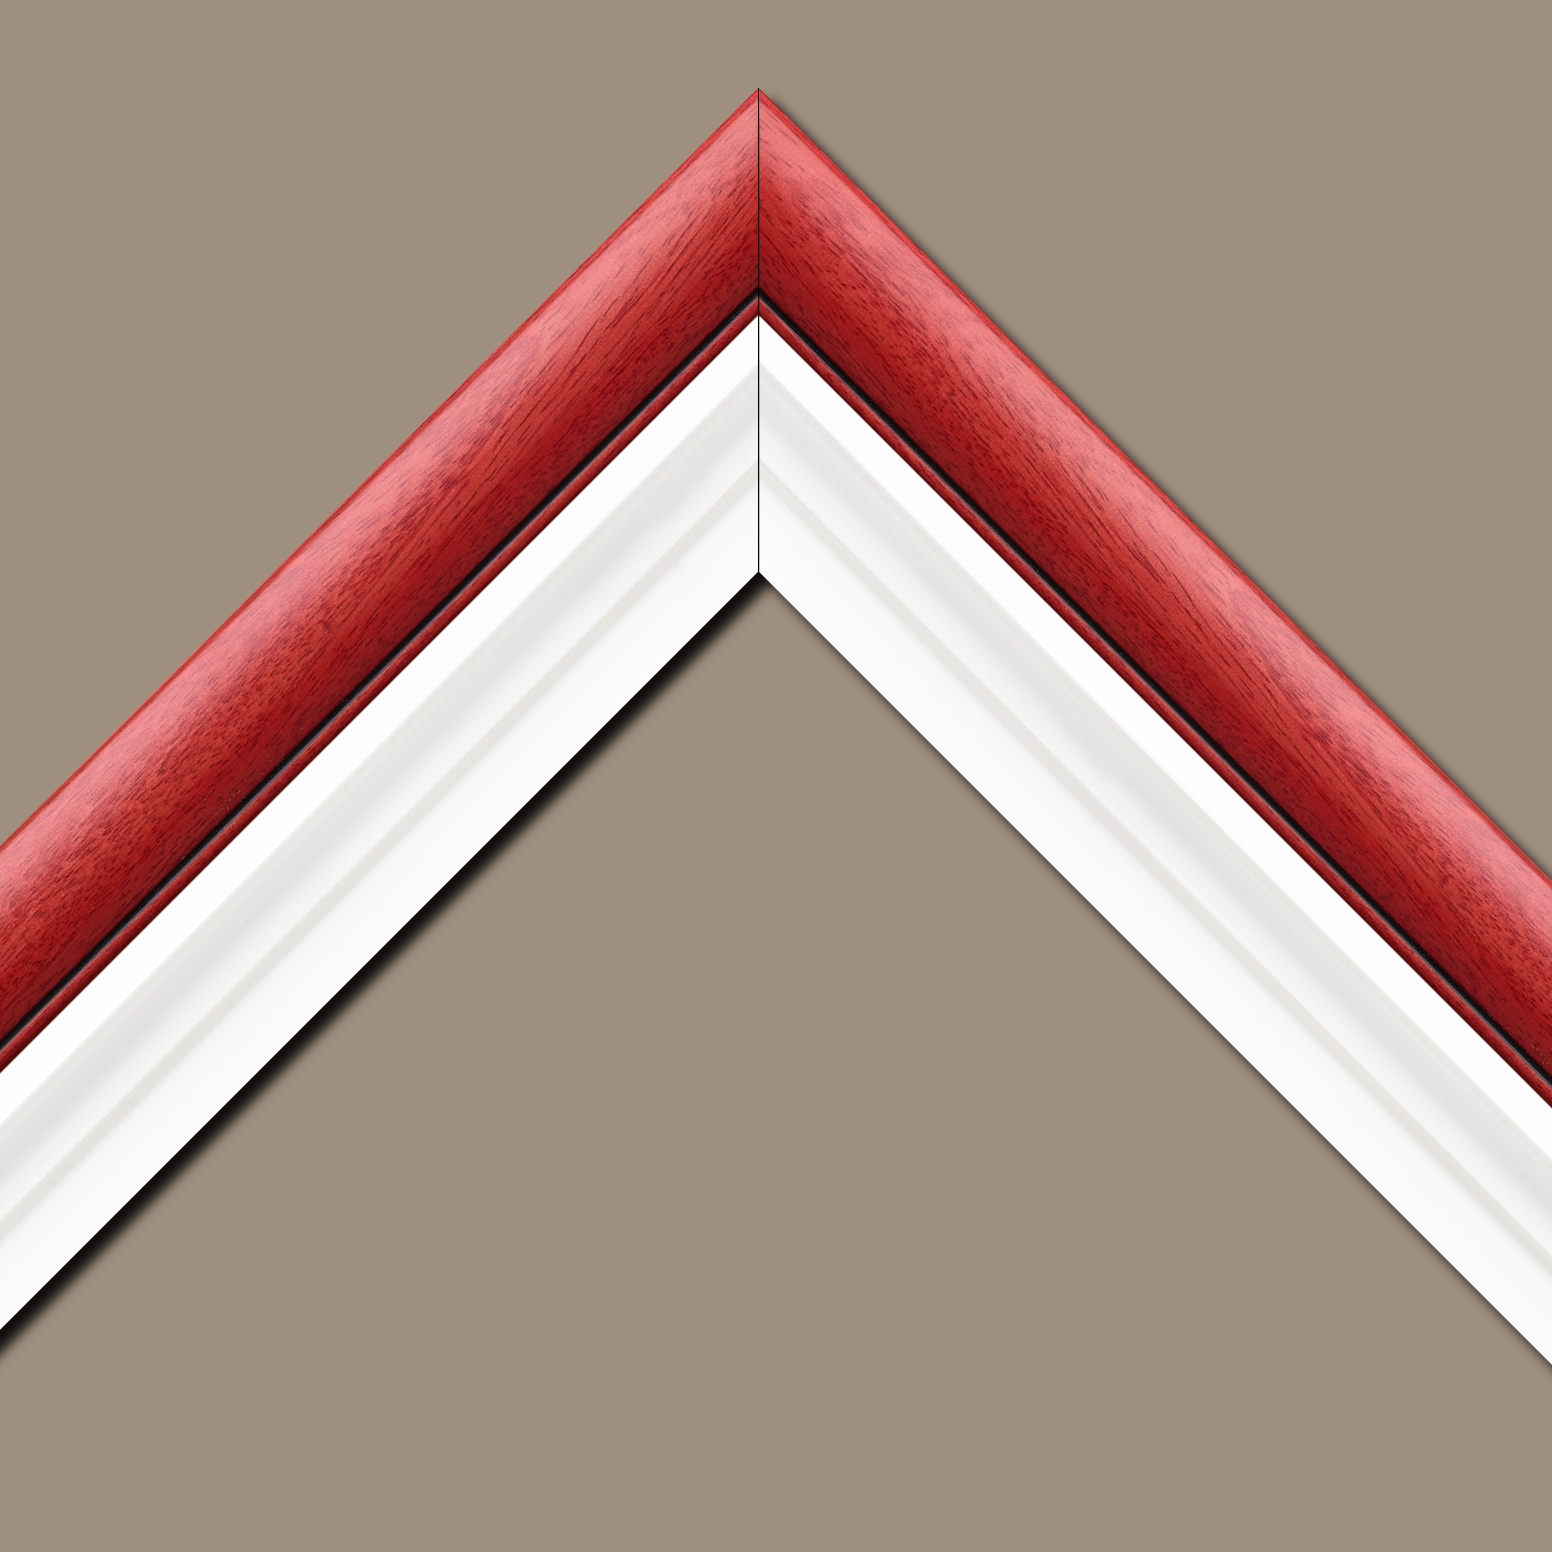 Caisse américaine pour peintures  americaine bois blanc rouge — 84.1 x 118.9